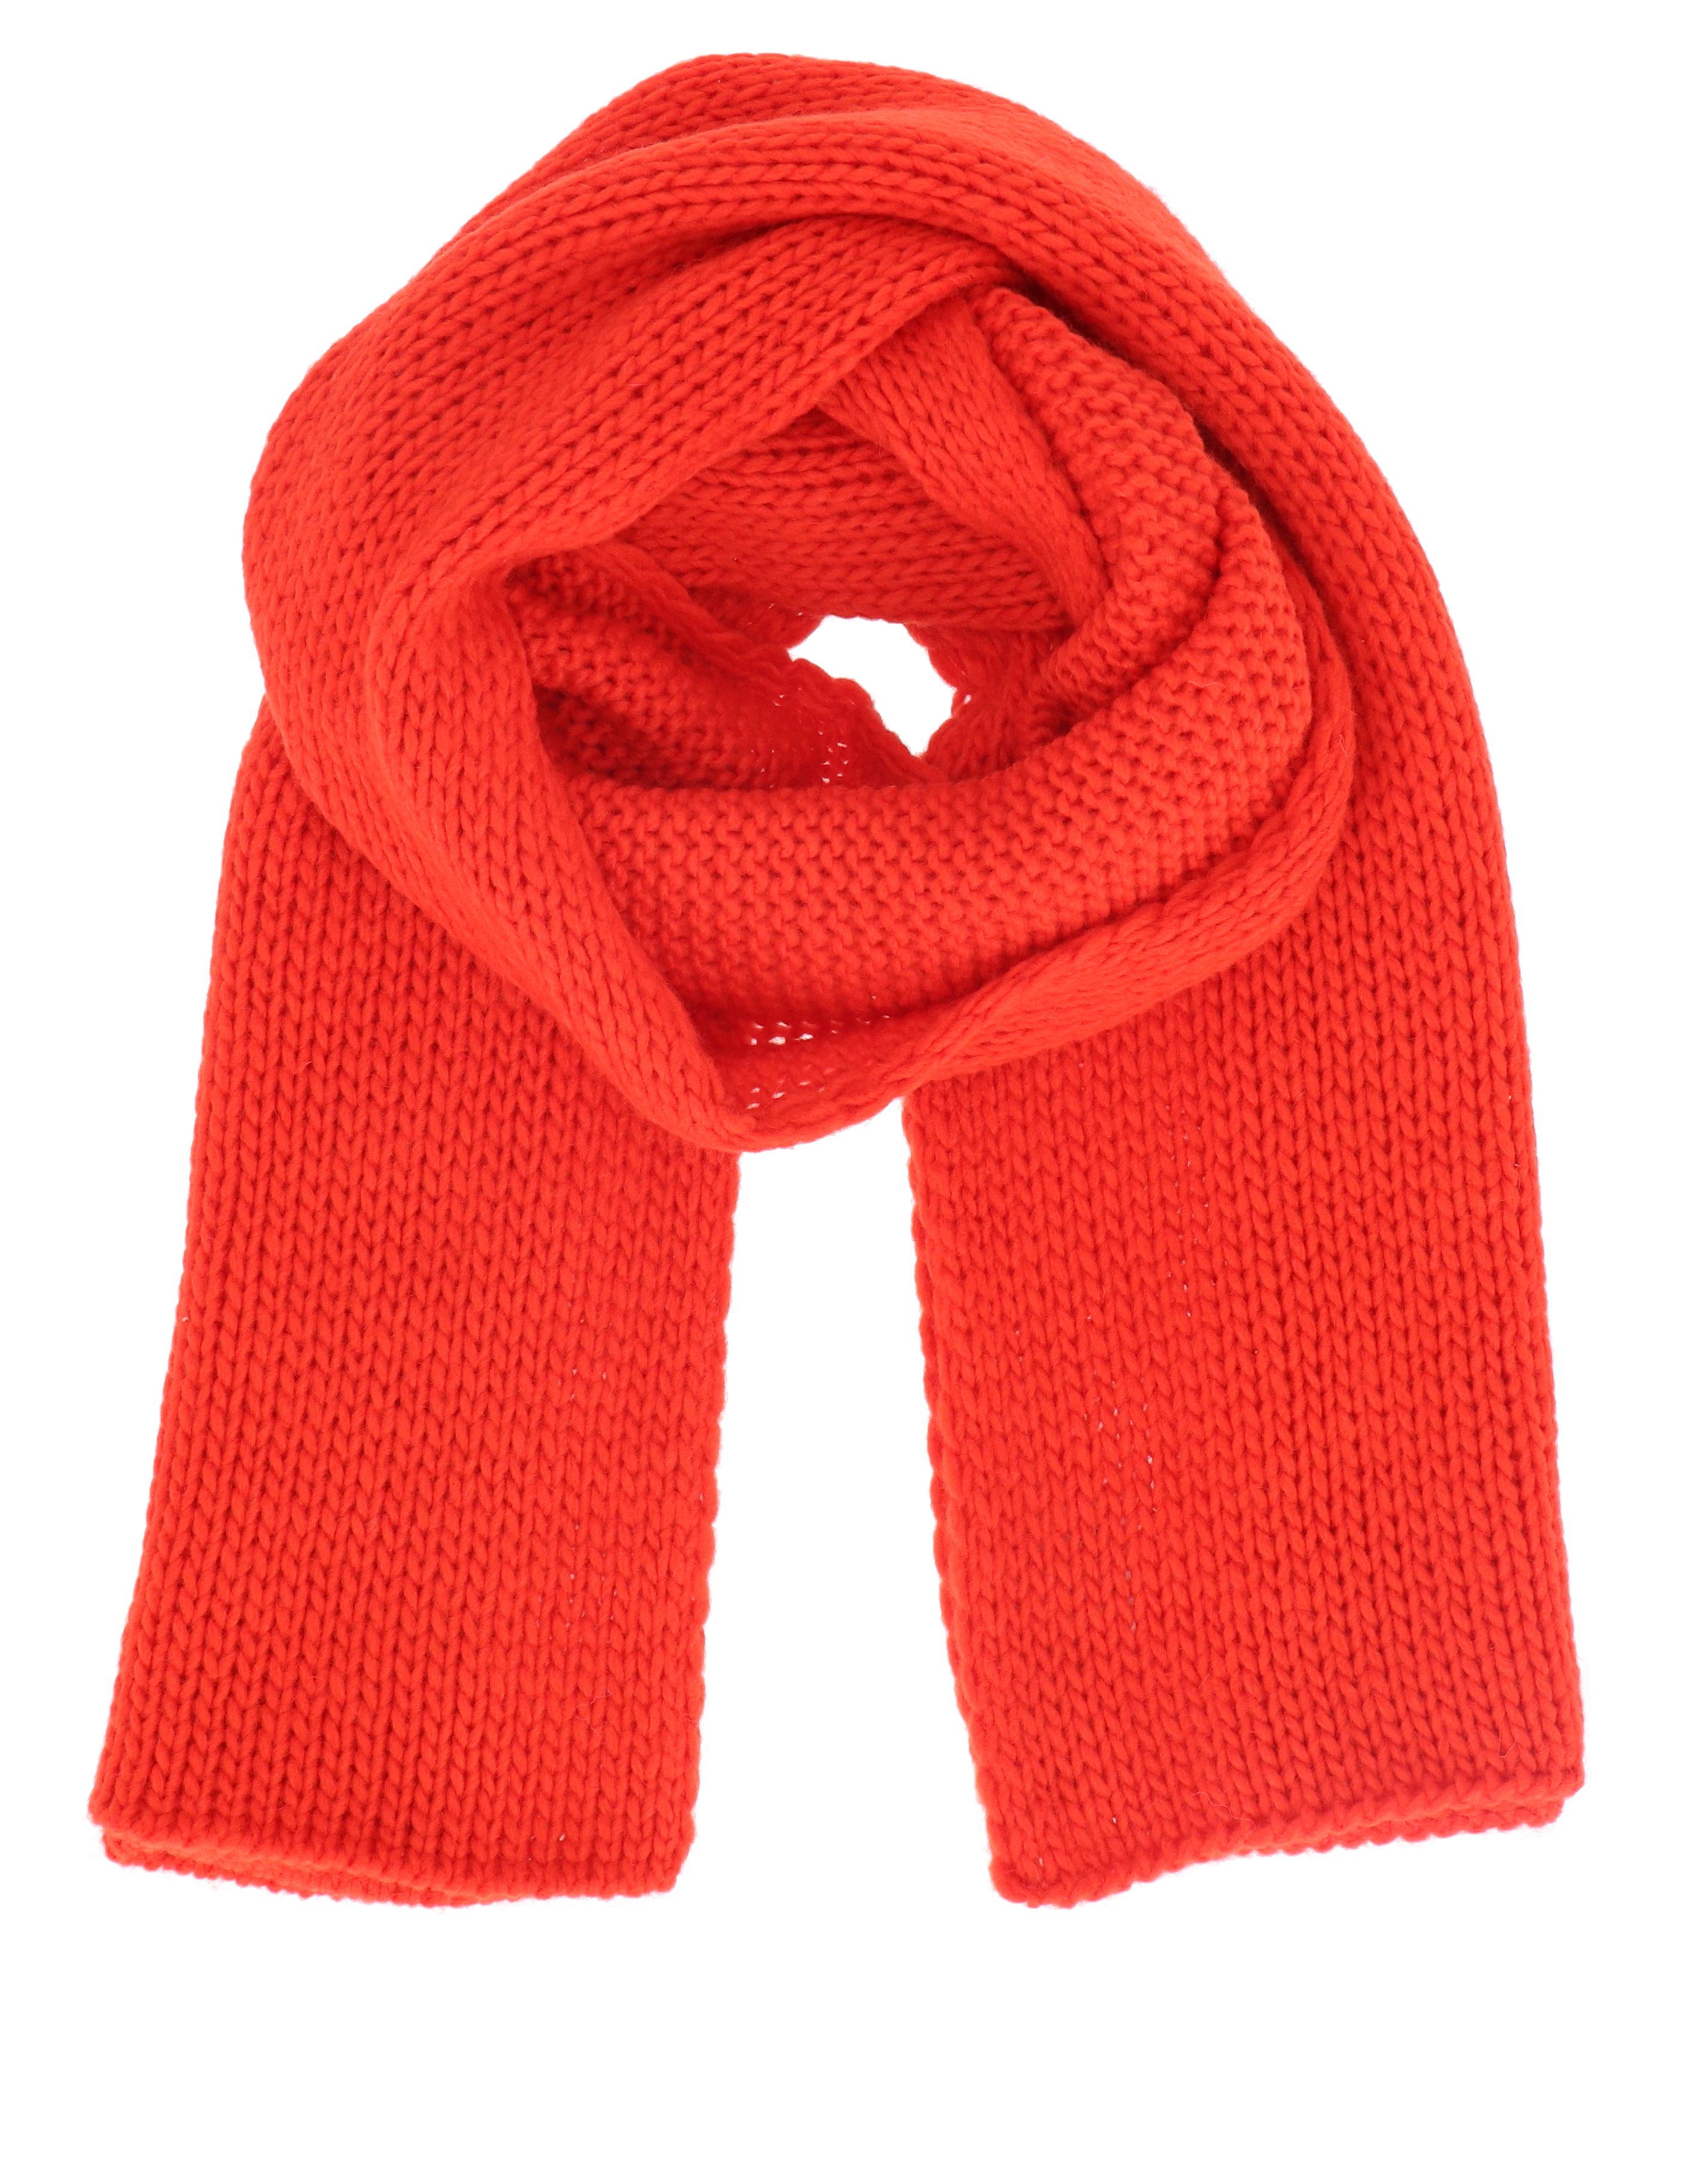 Schal in orange online kaufen | OTTO